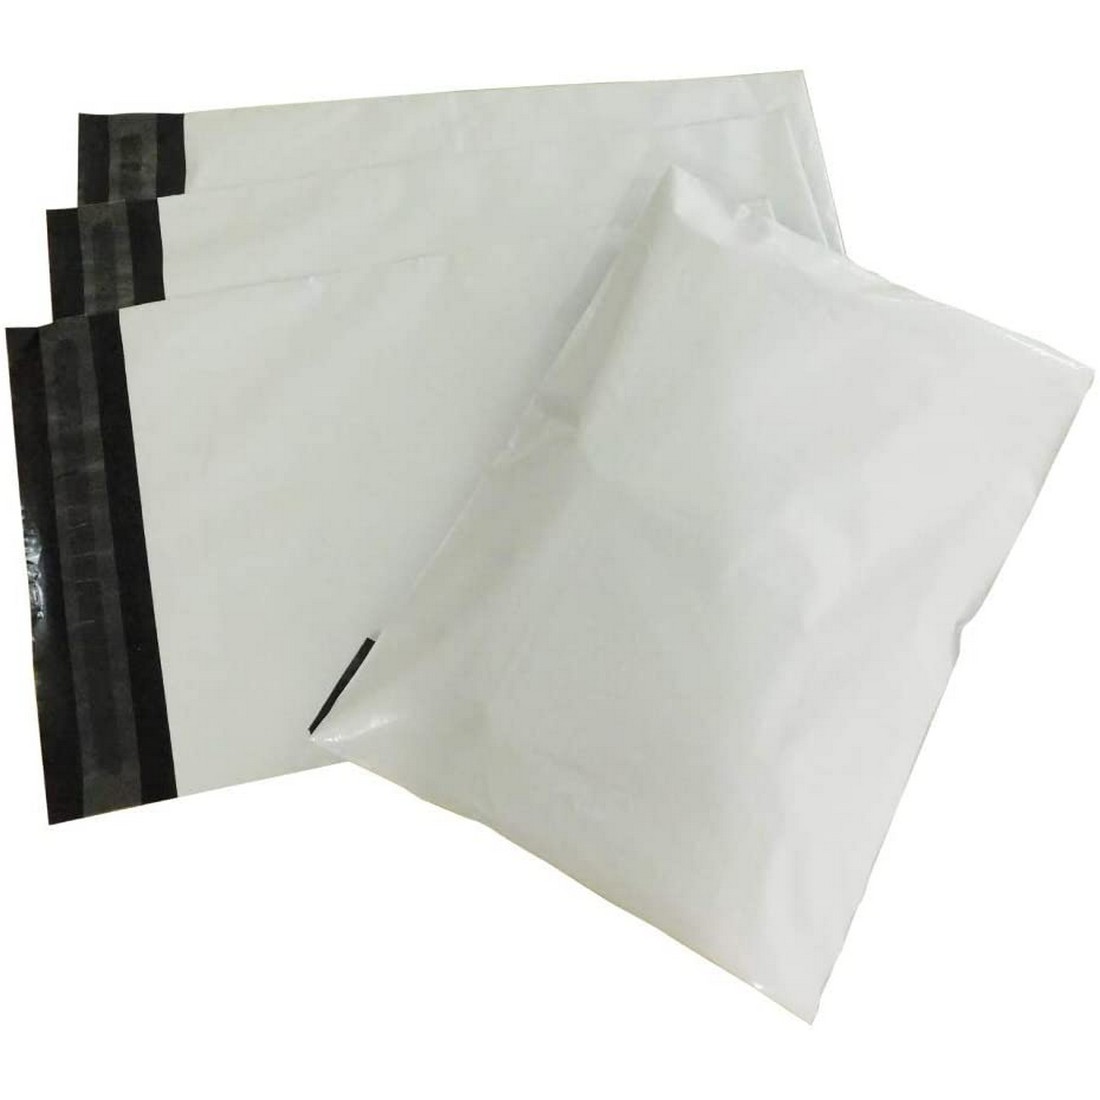 宅配ビニール袋 限定品 約100枚入り A2サイズ相当 44 耐水 梱包用 テープ付き お歳暮 55cm